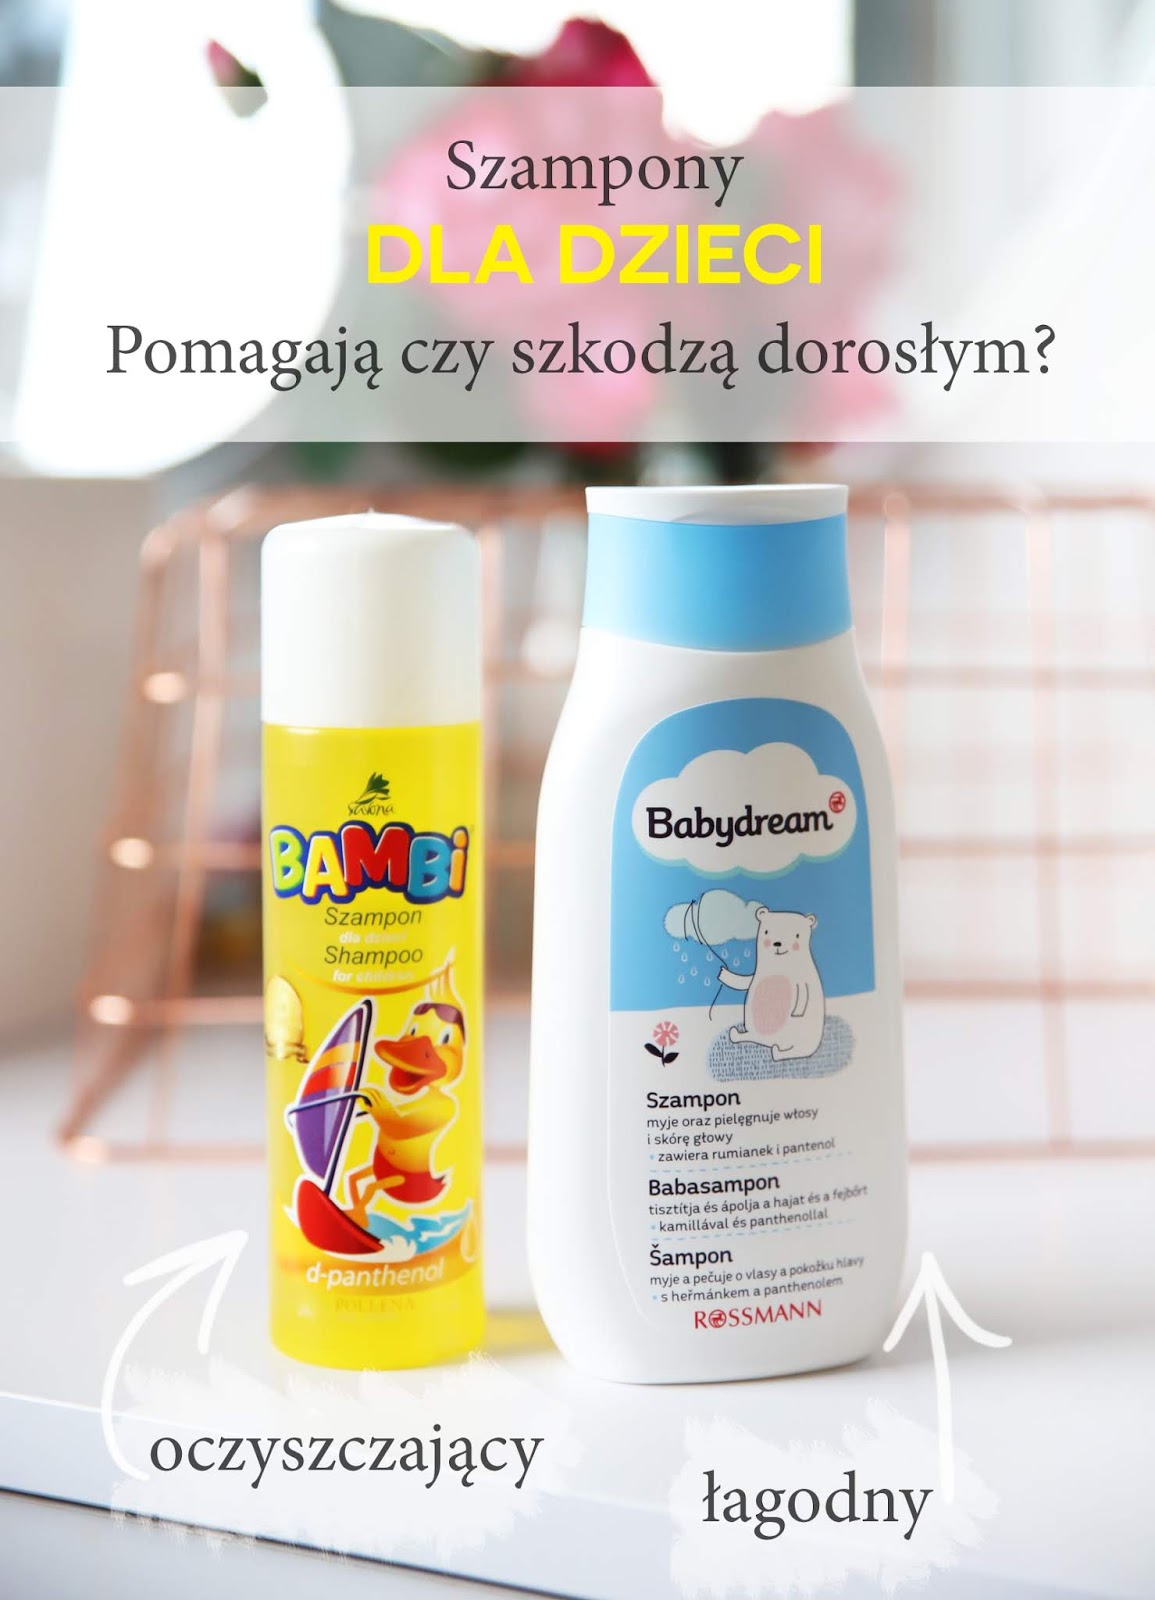 szampon dla dzieci urzywany przez doroslych